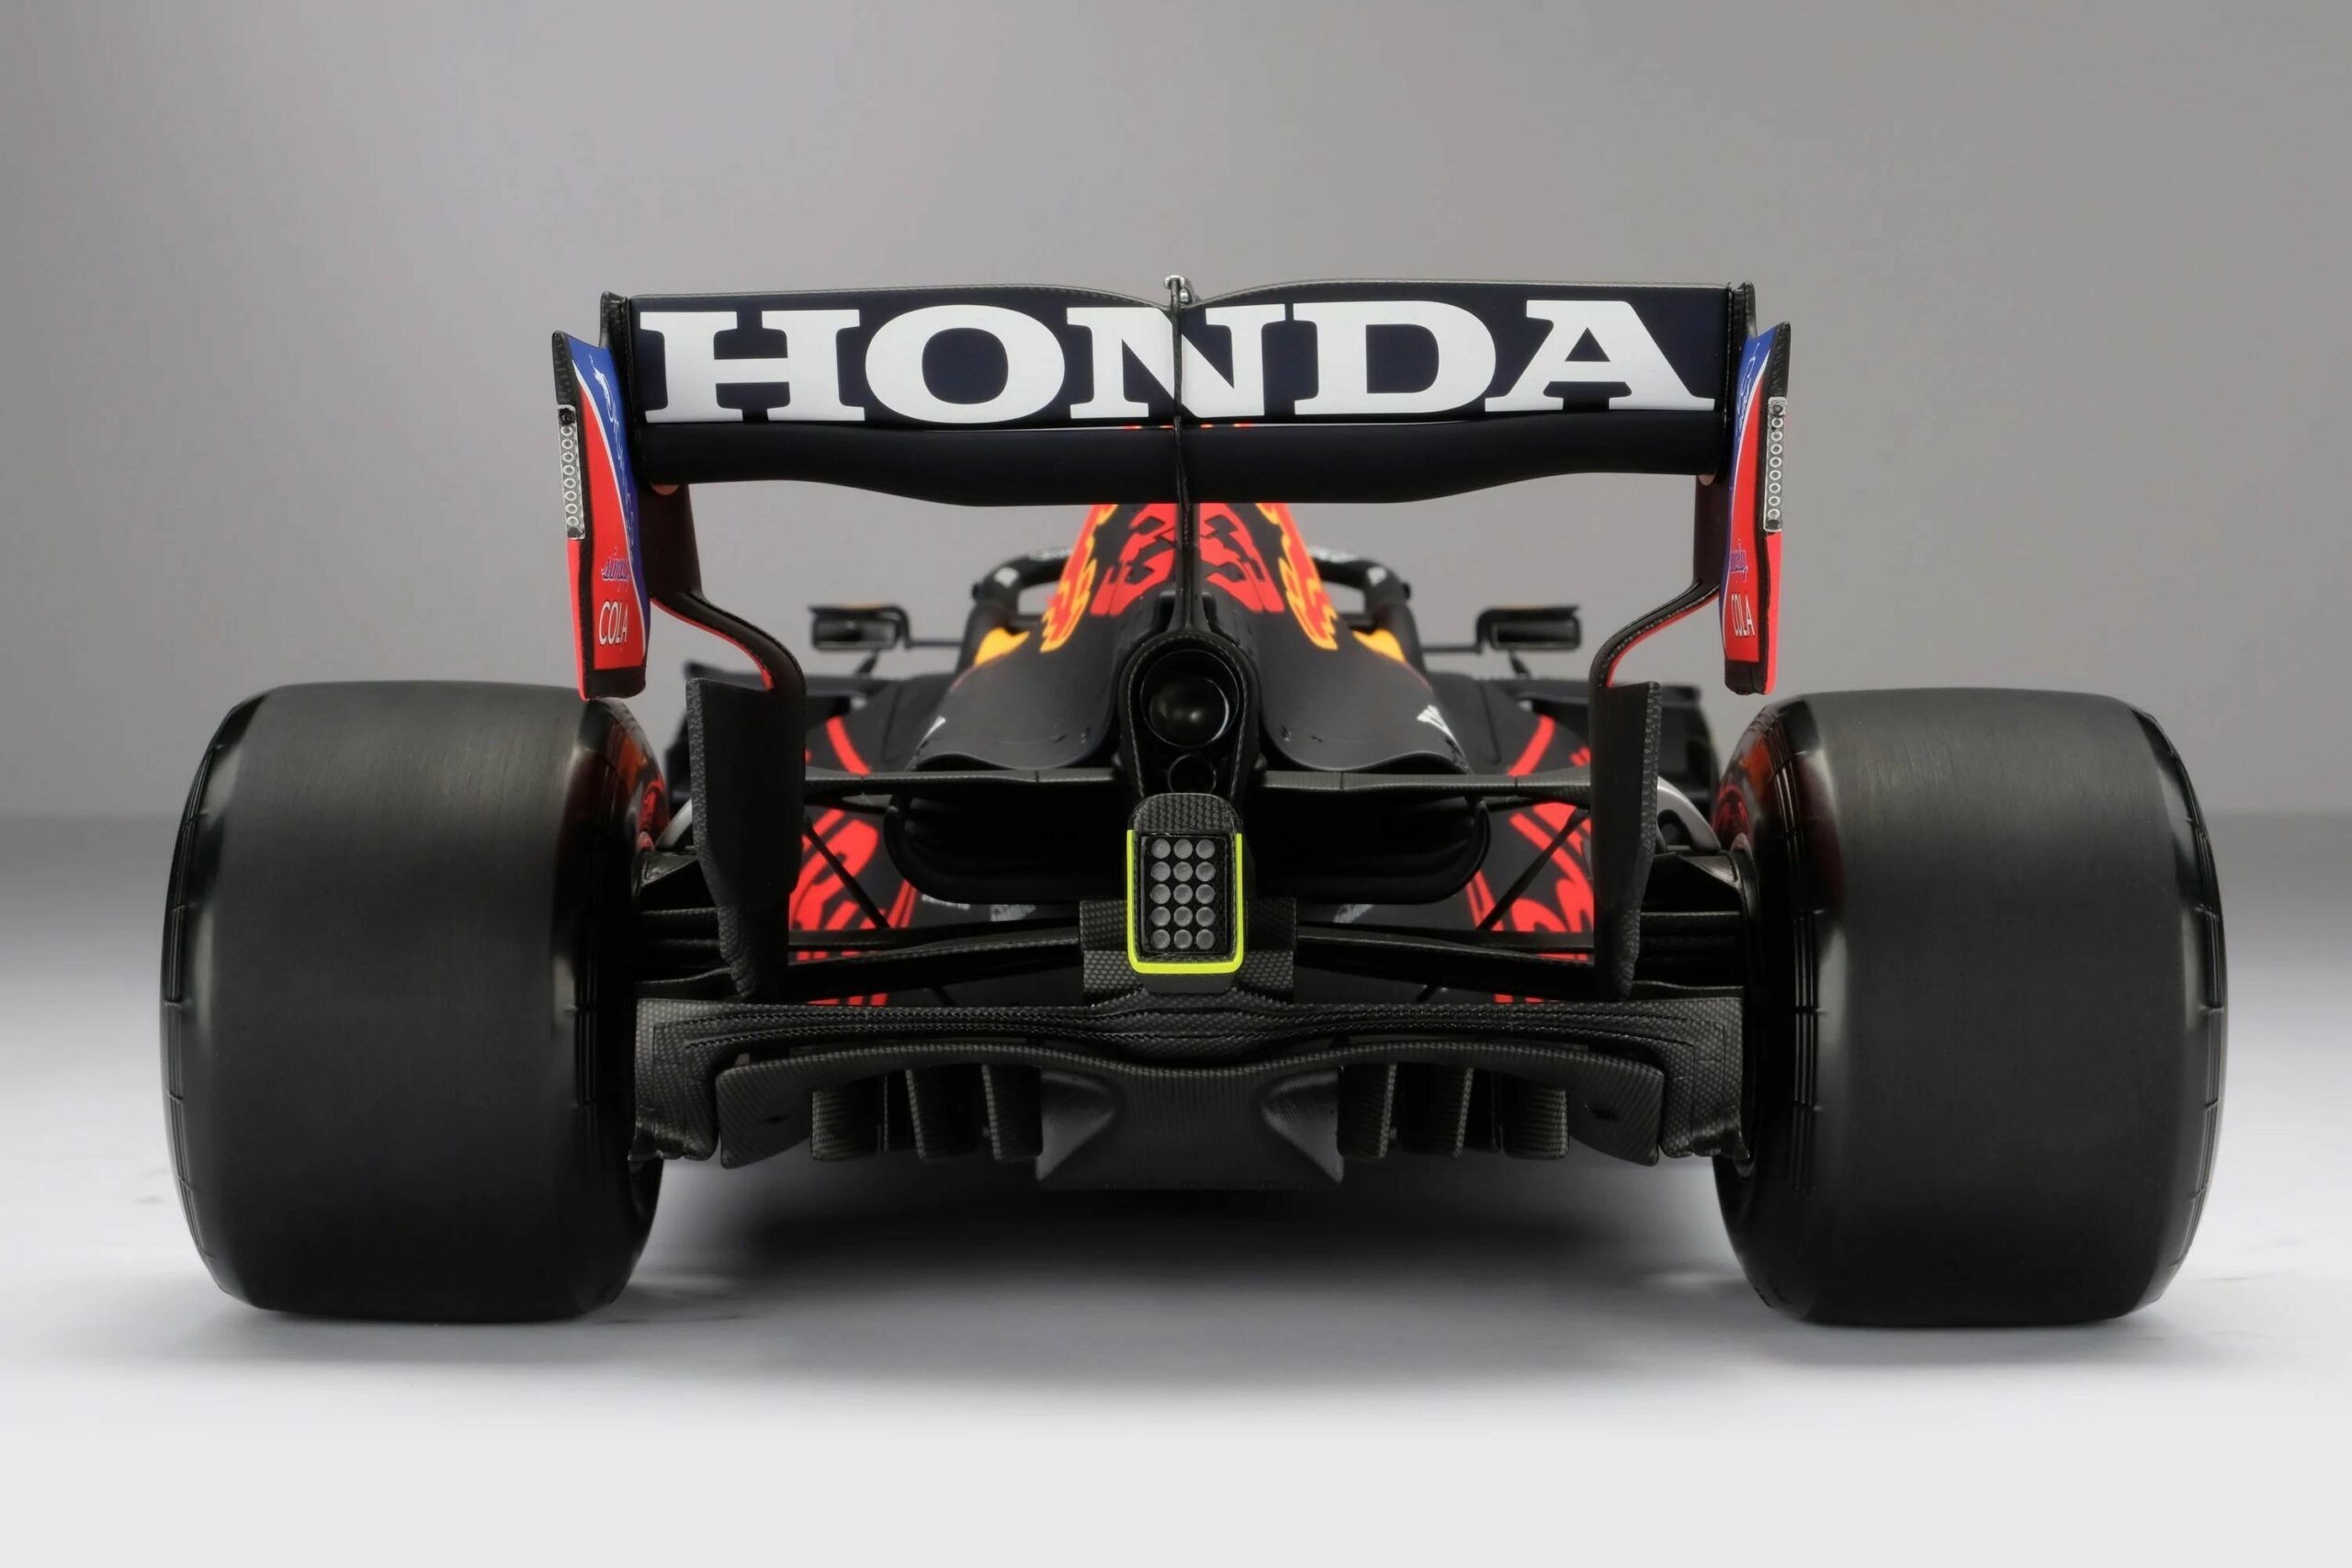 Чемпионский болид Формулы-1 появился в продаже за 10,5 тысяч долларов